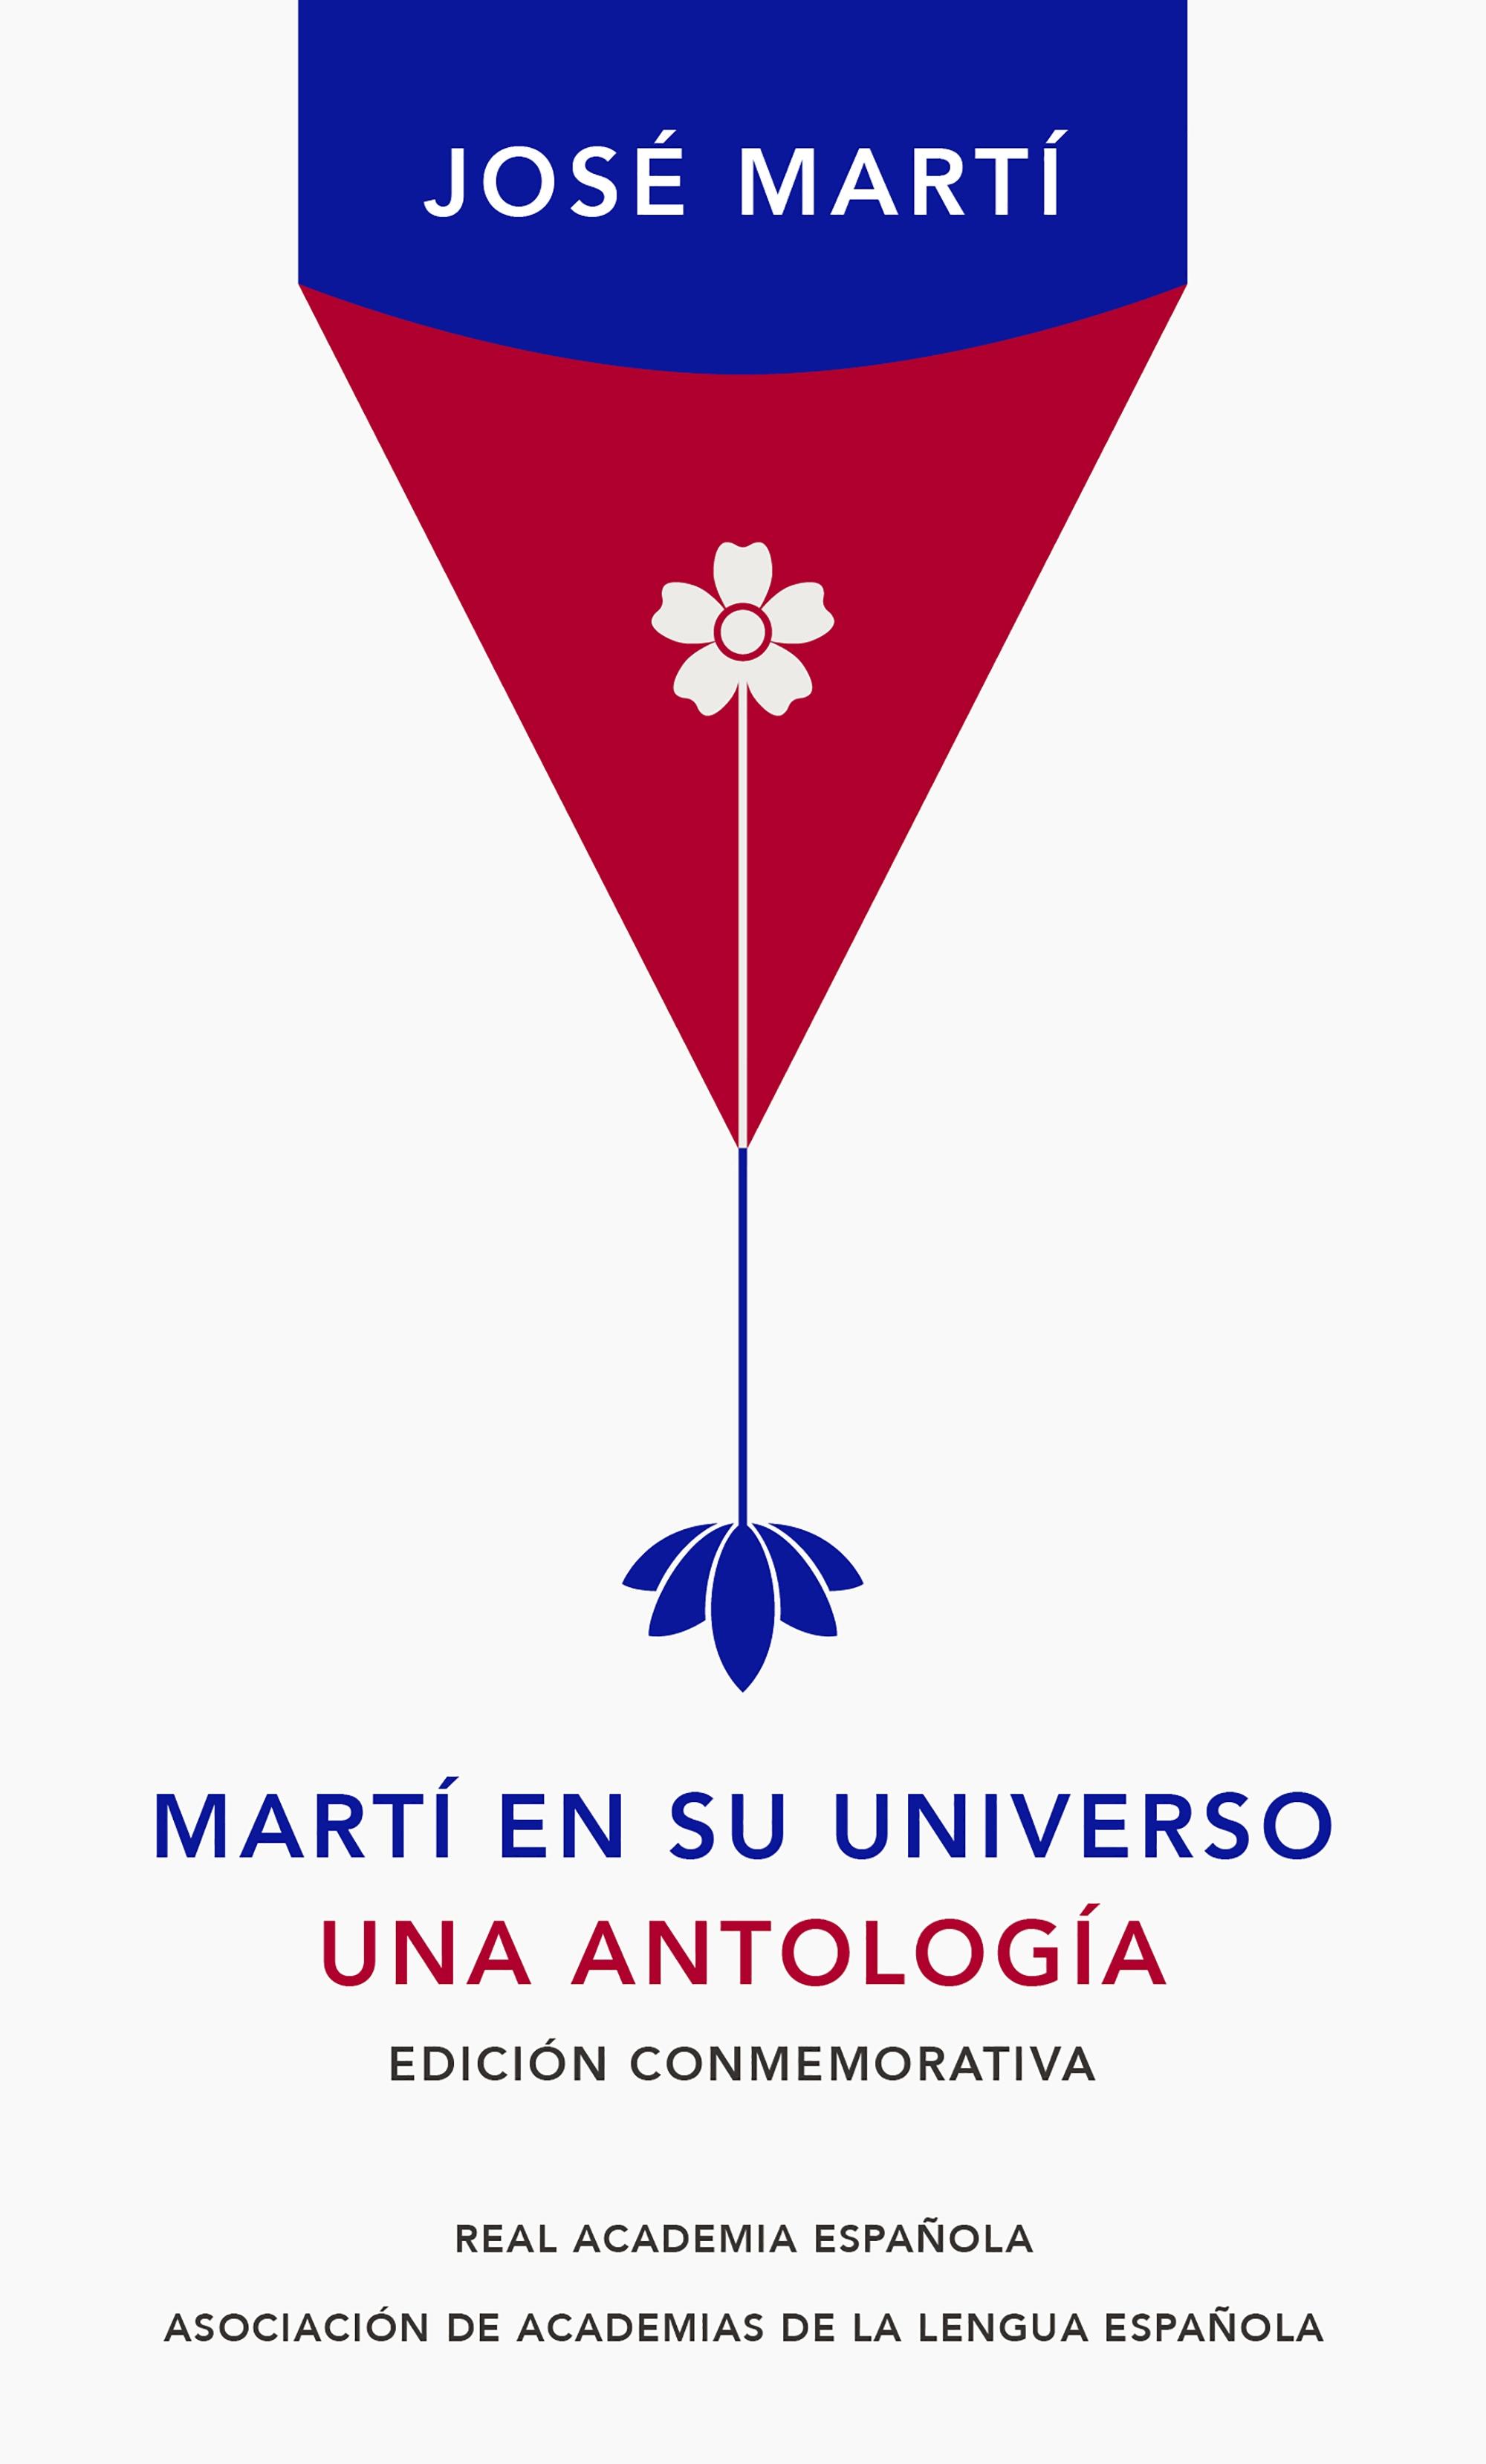 Martí en su Universo "Una Antología". 